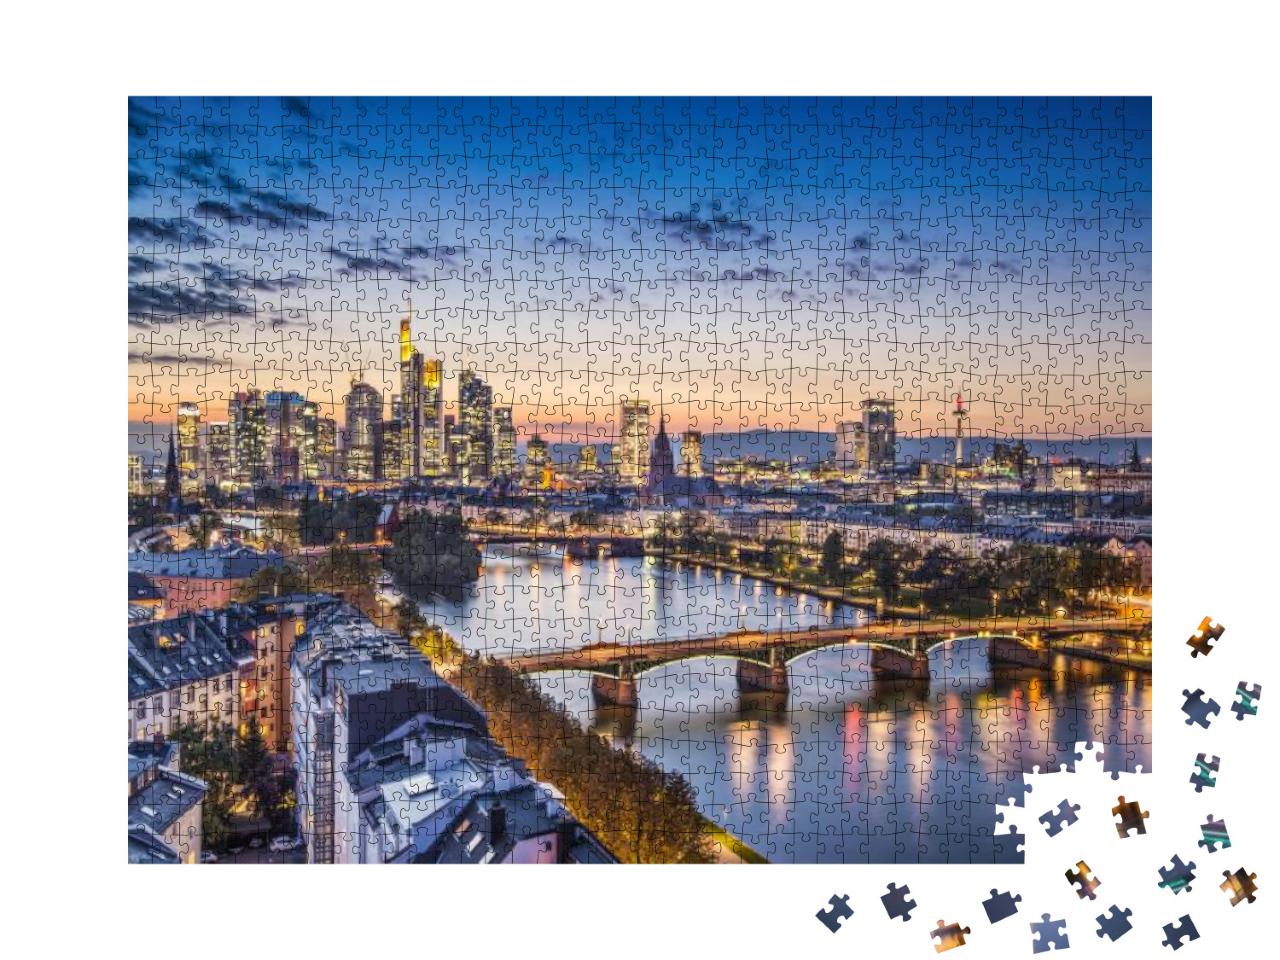 Frankfurt, Germany Financial District Skyline... Jigsaw Puzzle with 1000 pieces